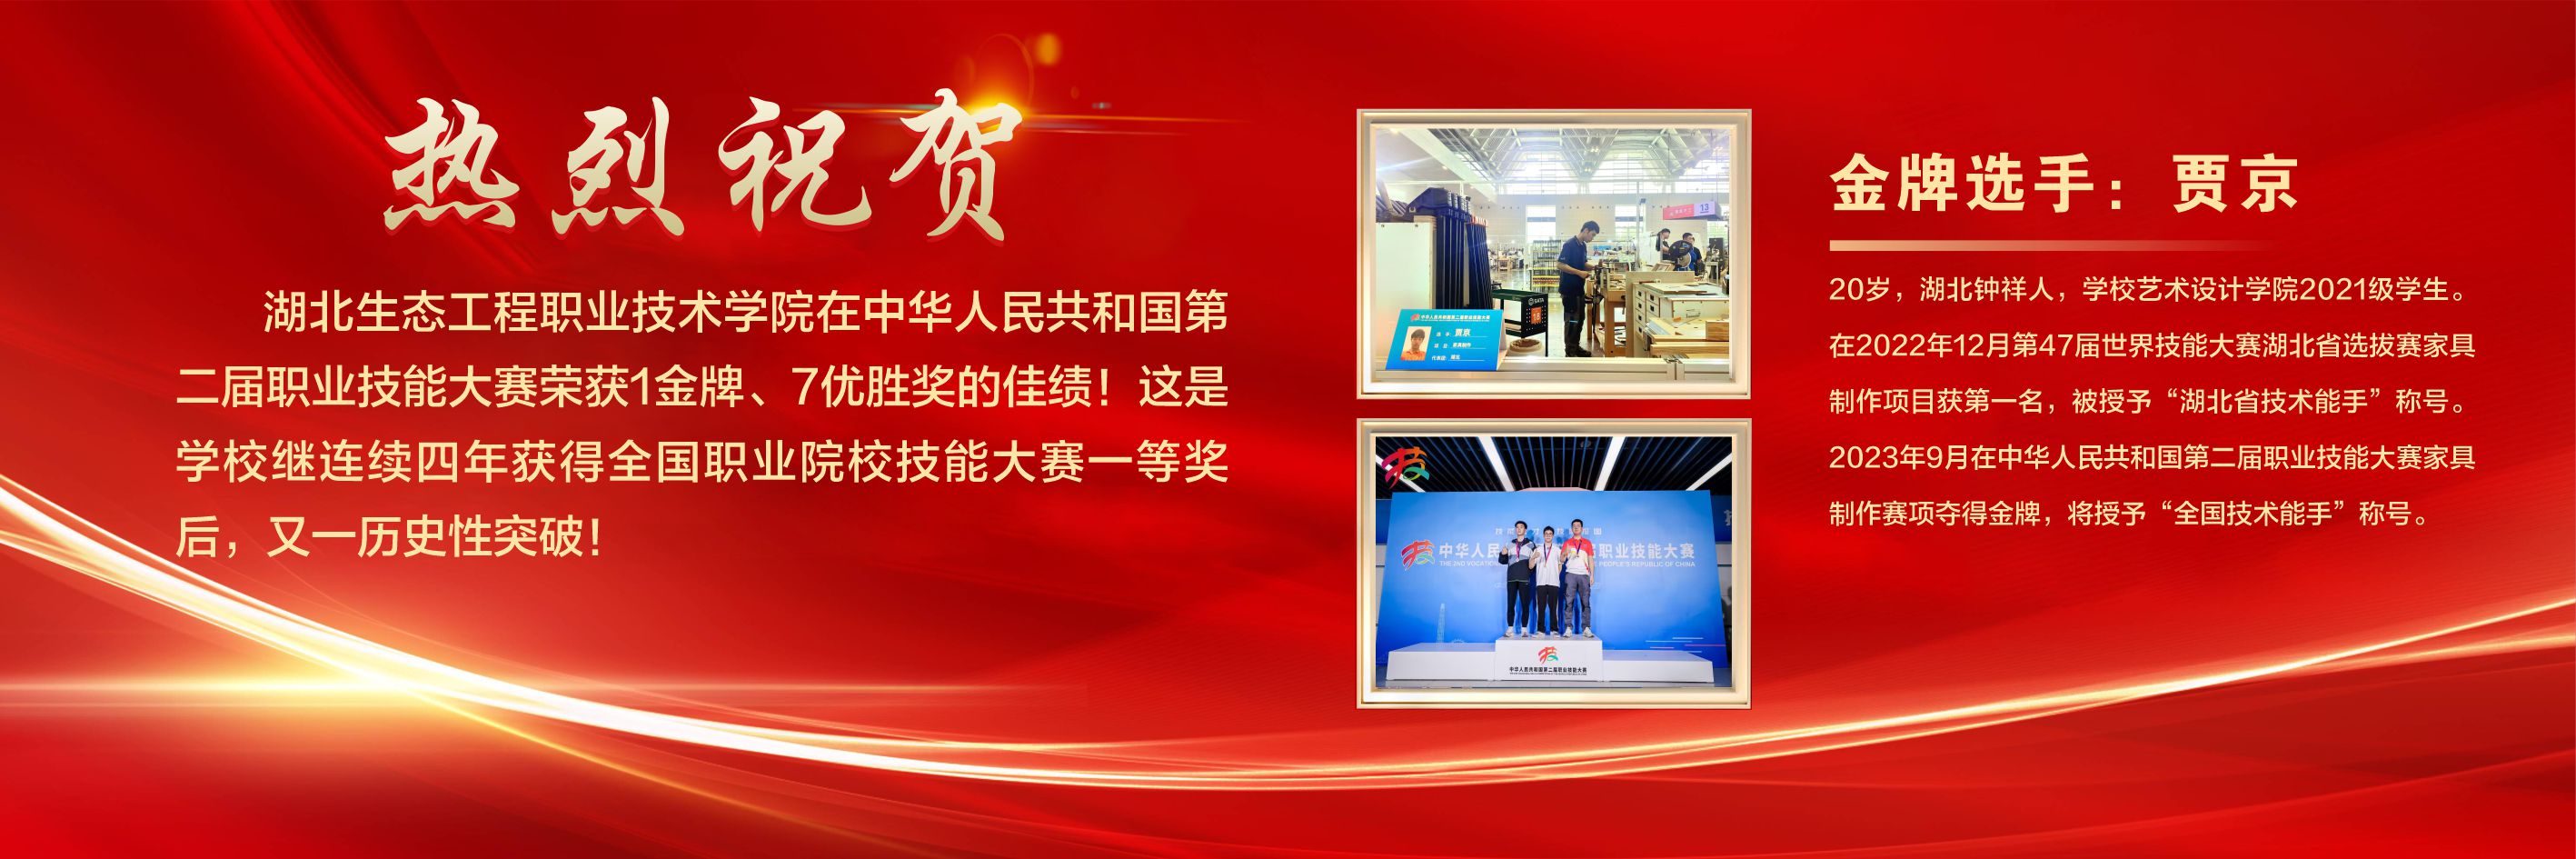 学校在中华人民共和国第二届职业技能大赛上荣获佳绩